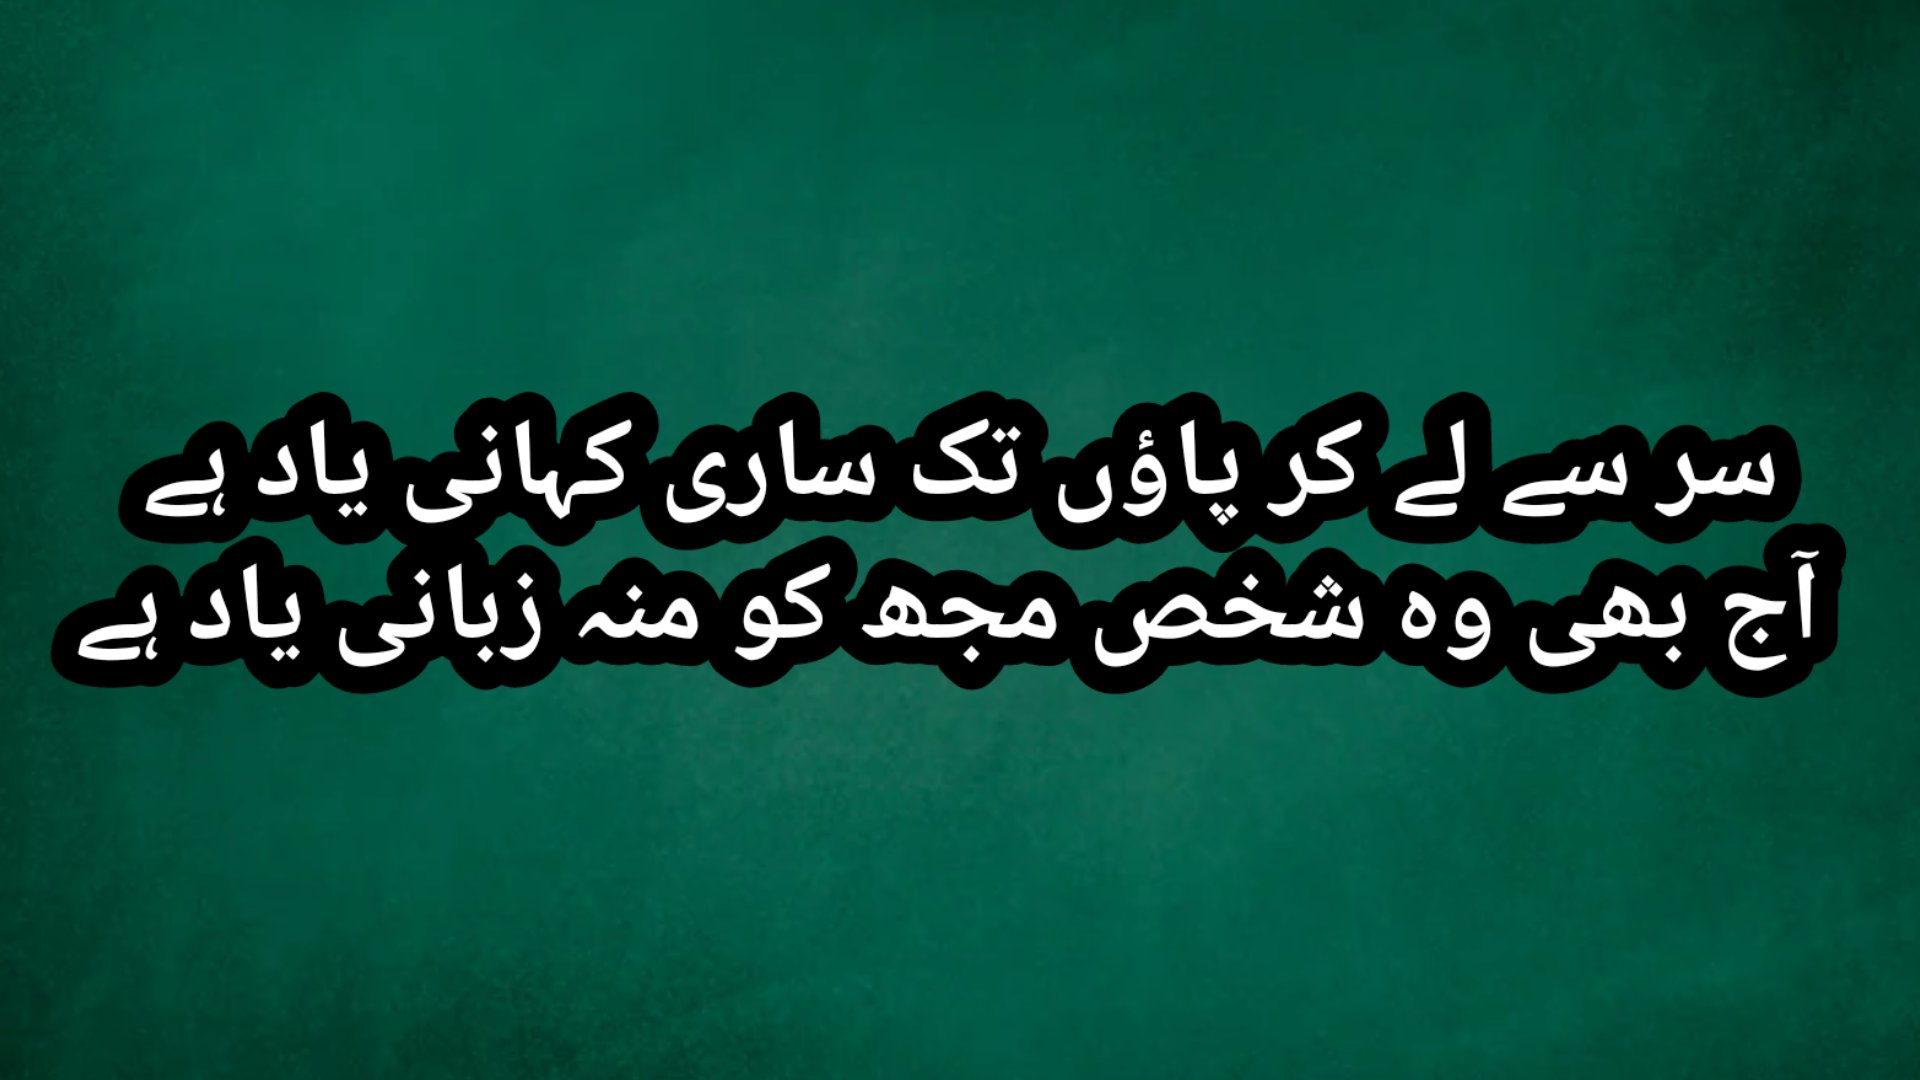 Yaad Poetry & Yaad Poetry in Urdu